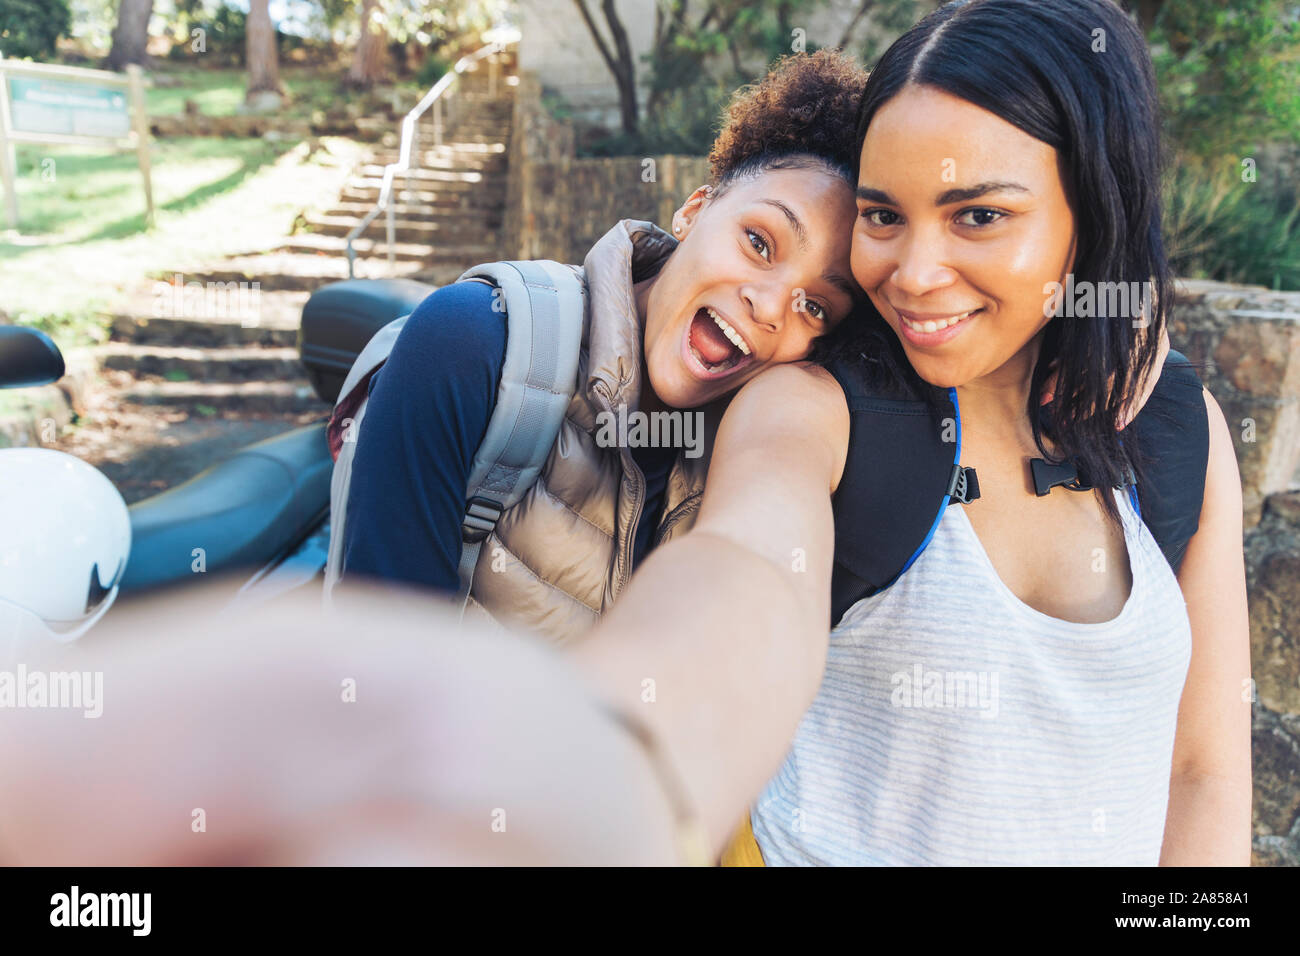 Point de vue selfies heureux, jeunes femmes espiègles amis Banque D'Images